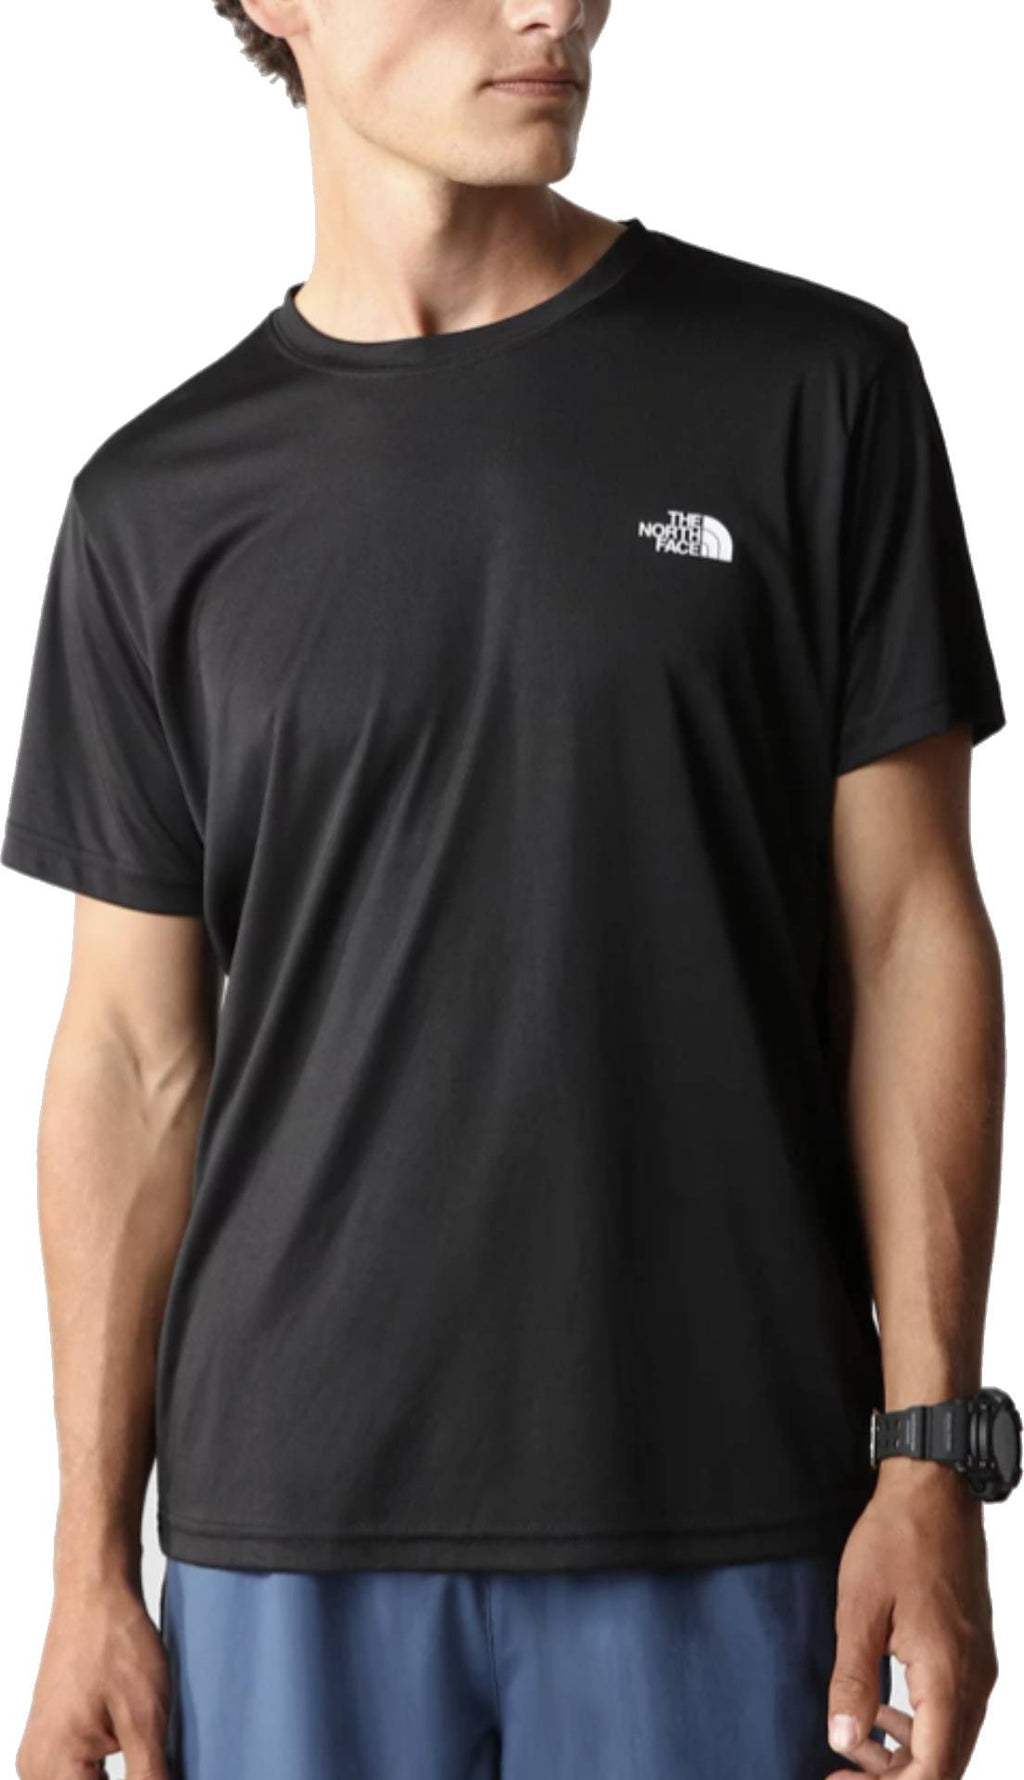  The North Face T-shirt Men's Reaxion Amp Crew Black Nero Uomo - 1